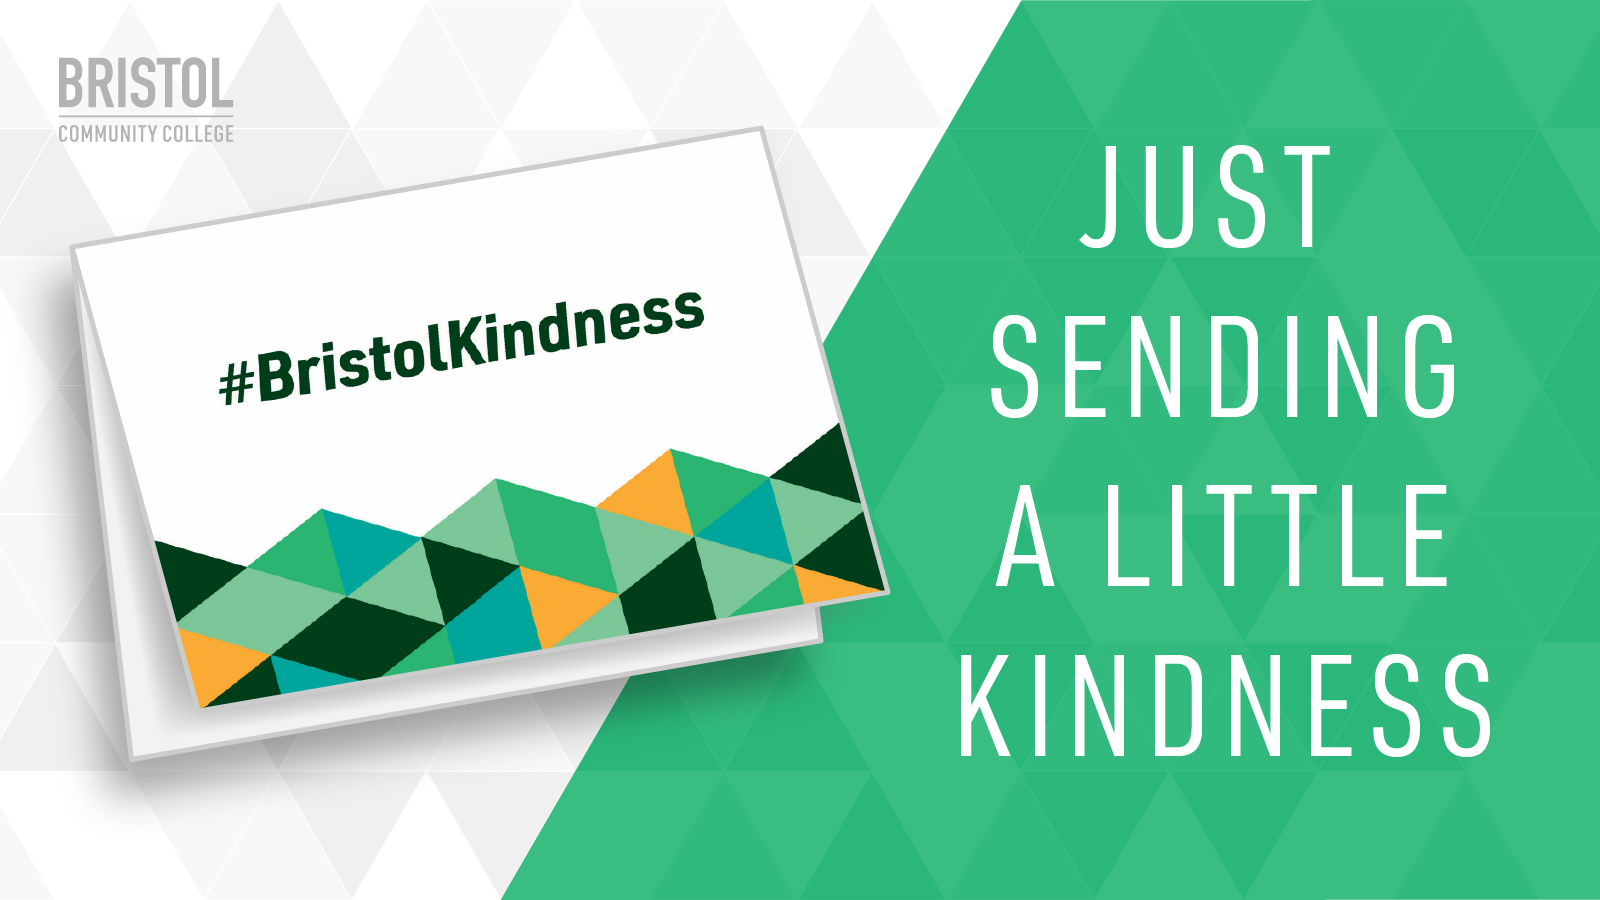 Bristol Kindness - Just Sending